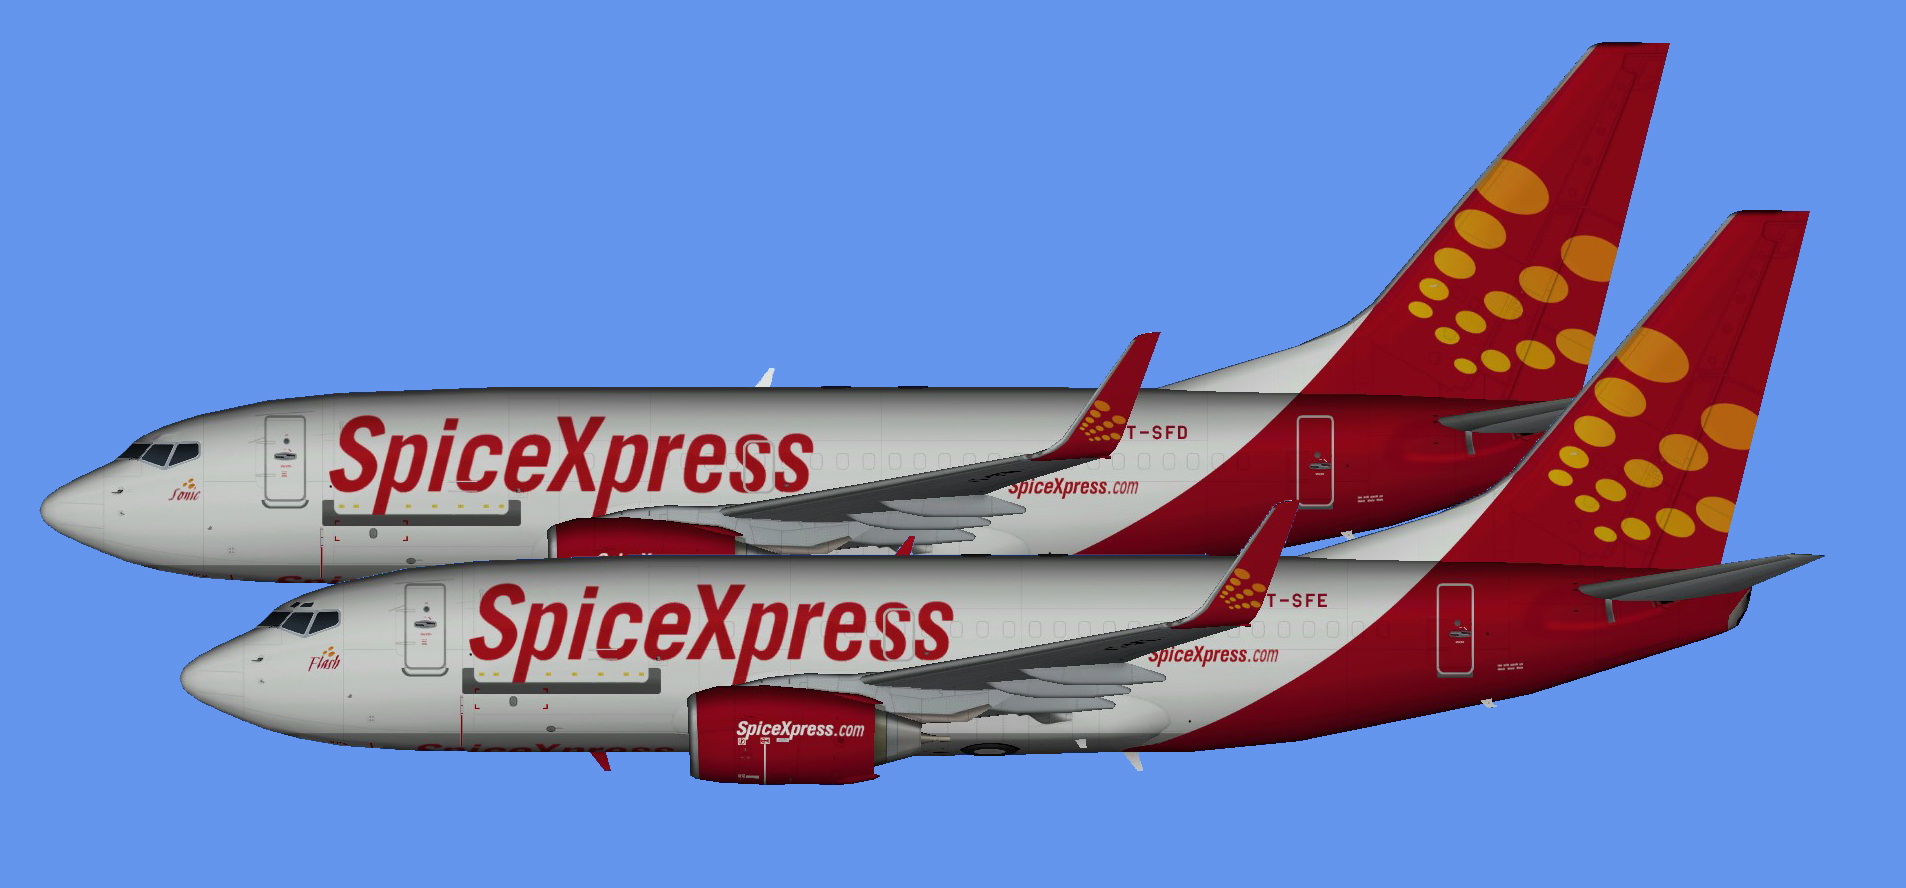 SpiceXpress Boeing 737-700